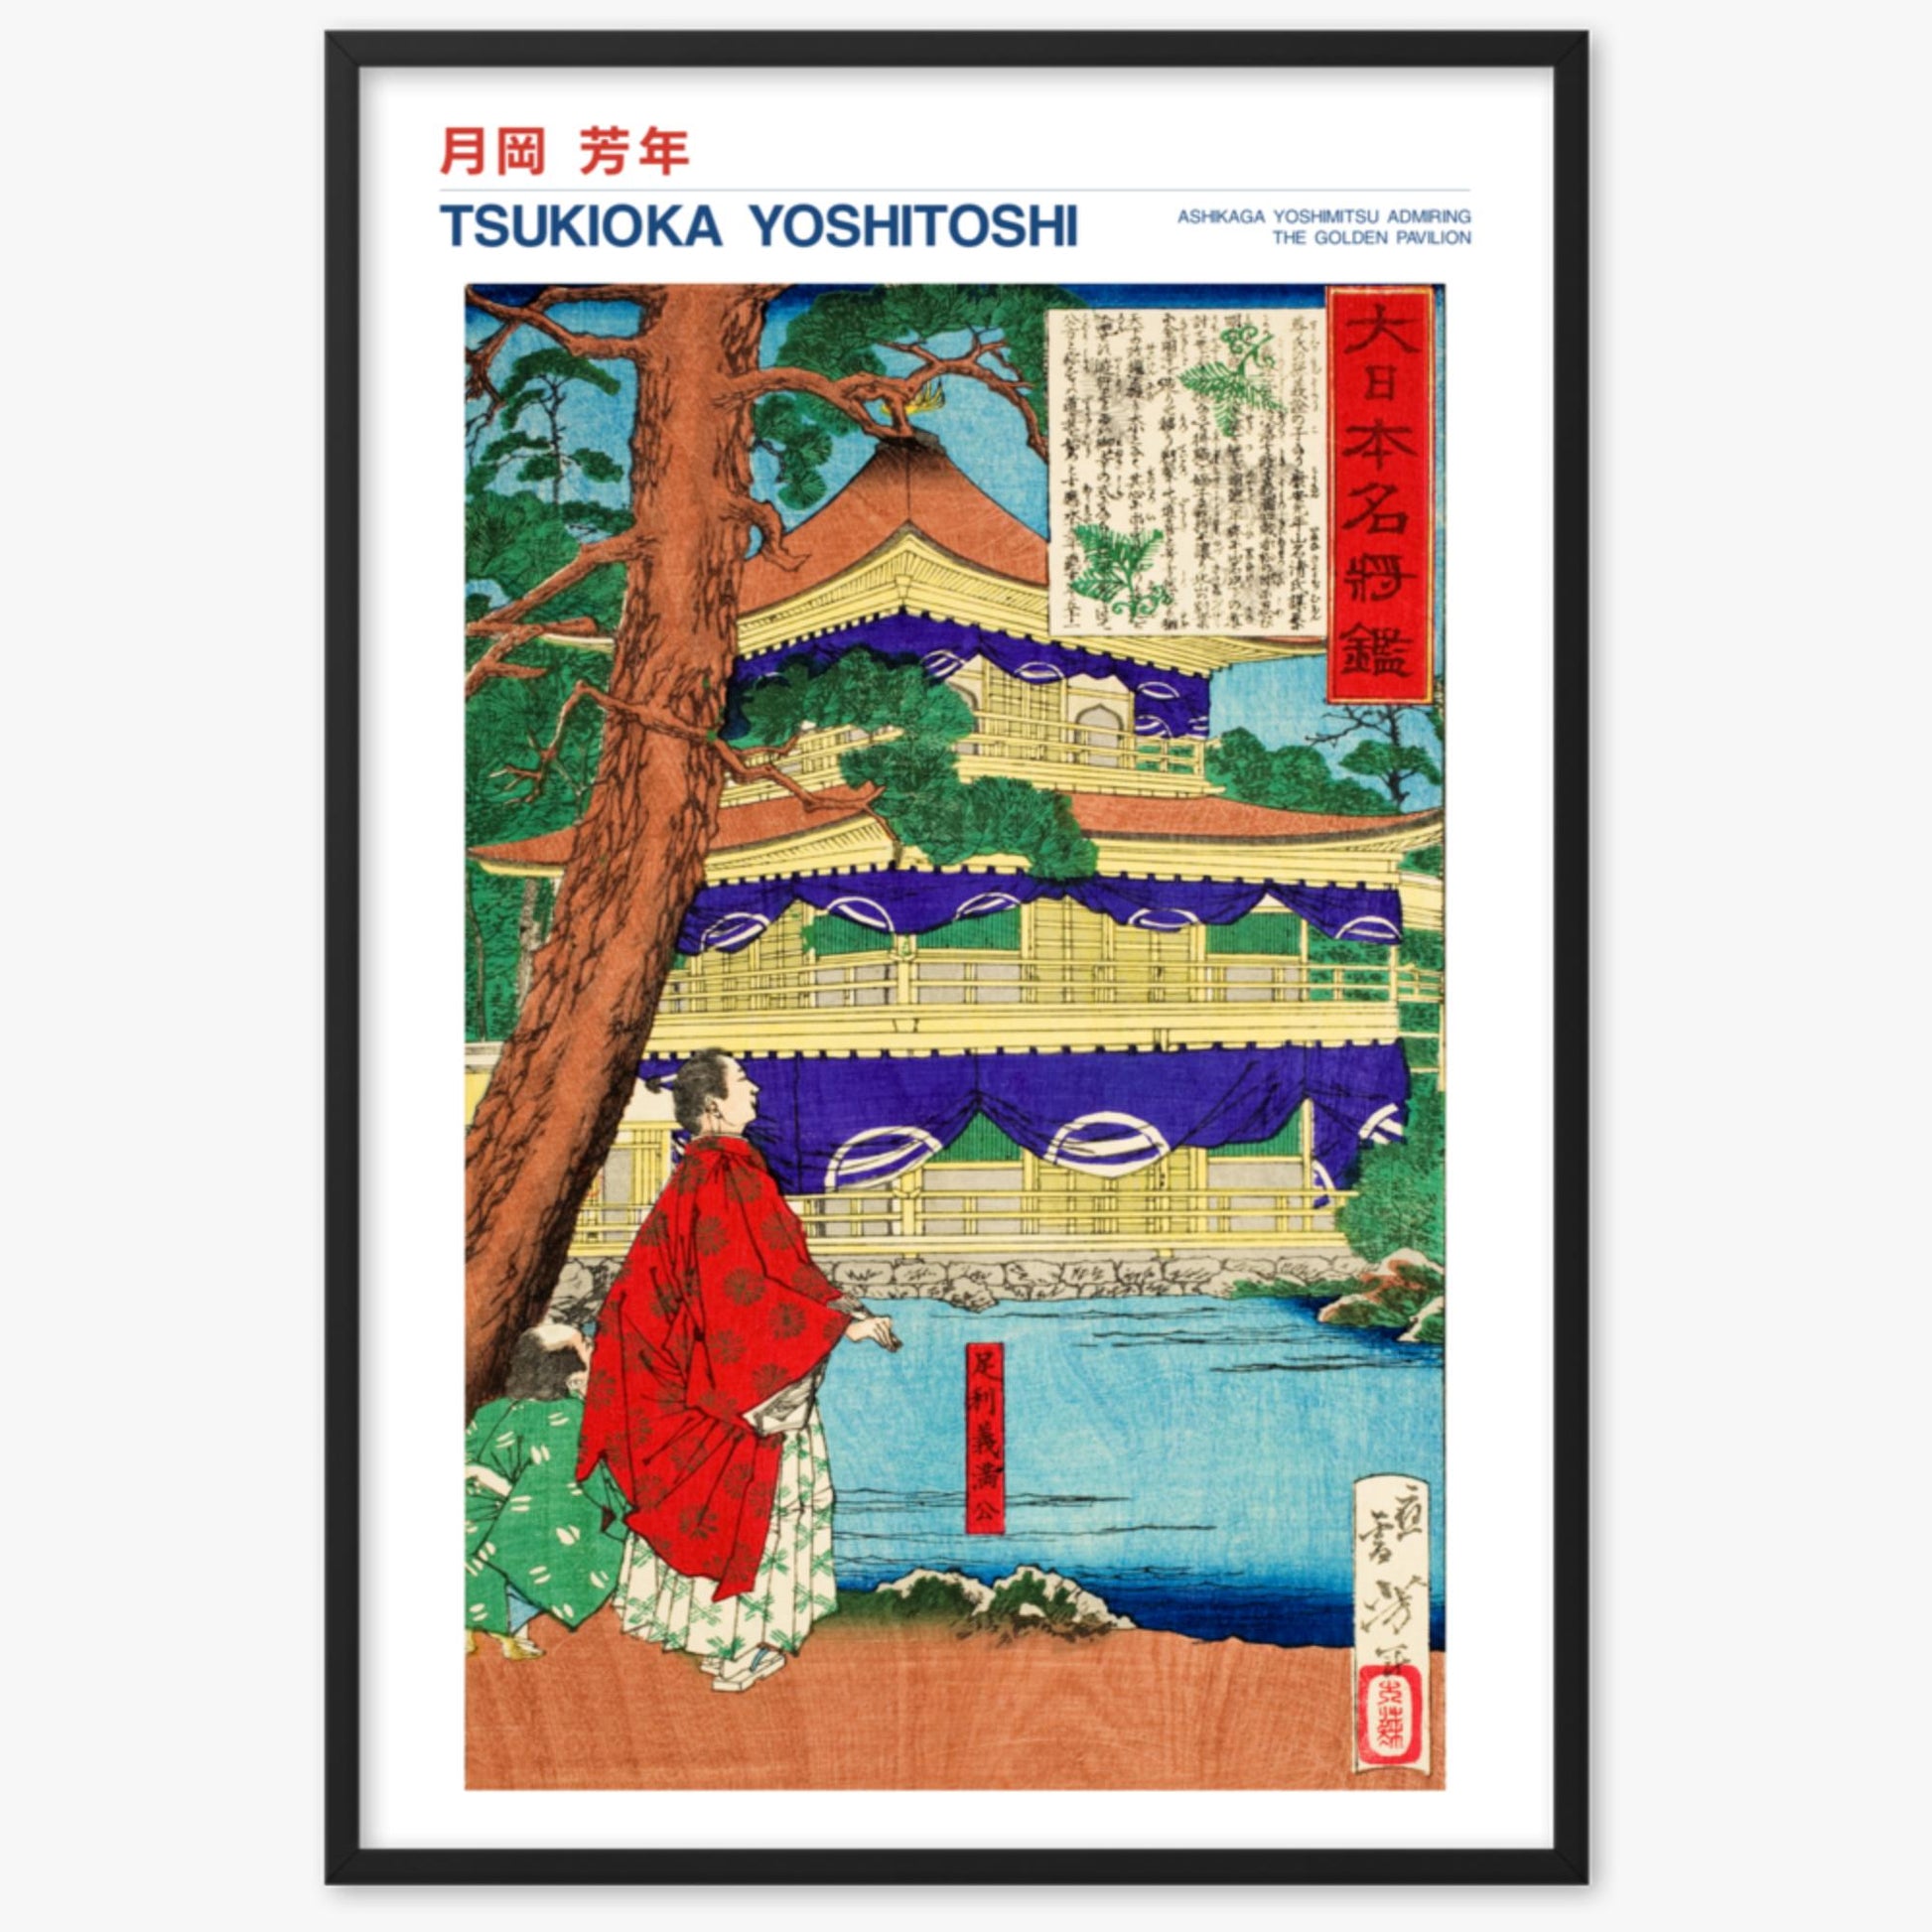 Tsukioka Yoshitoshi - Ashikaga Yoshimitsu admiring the Golden Pavilion - Decoration 61x91 cm Poster With Black Frame